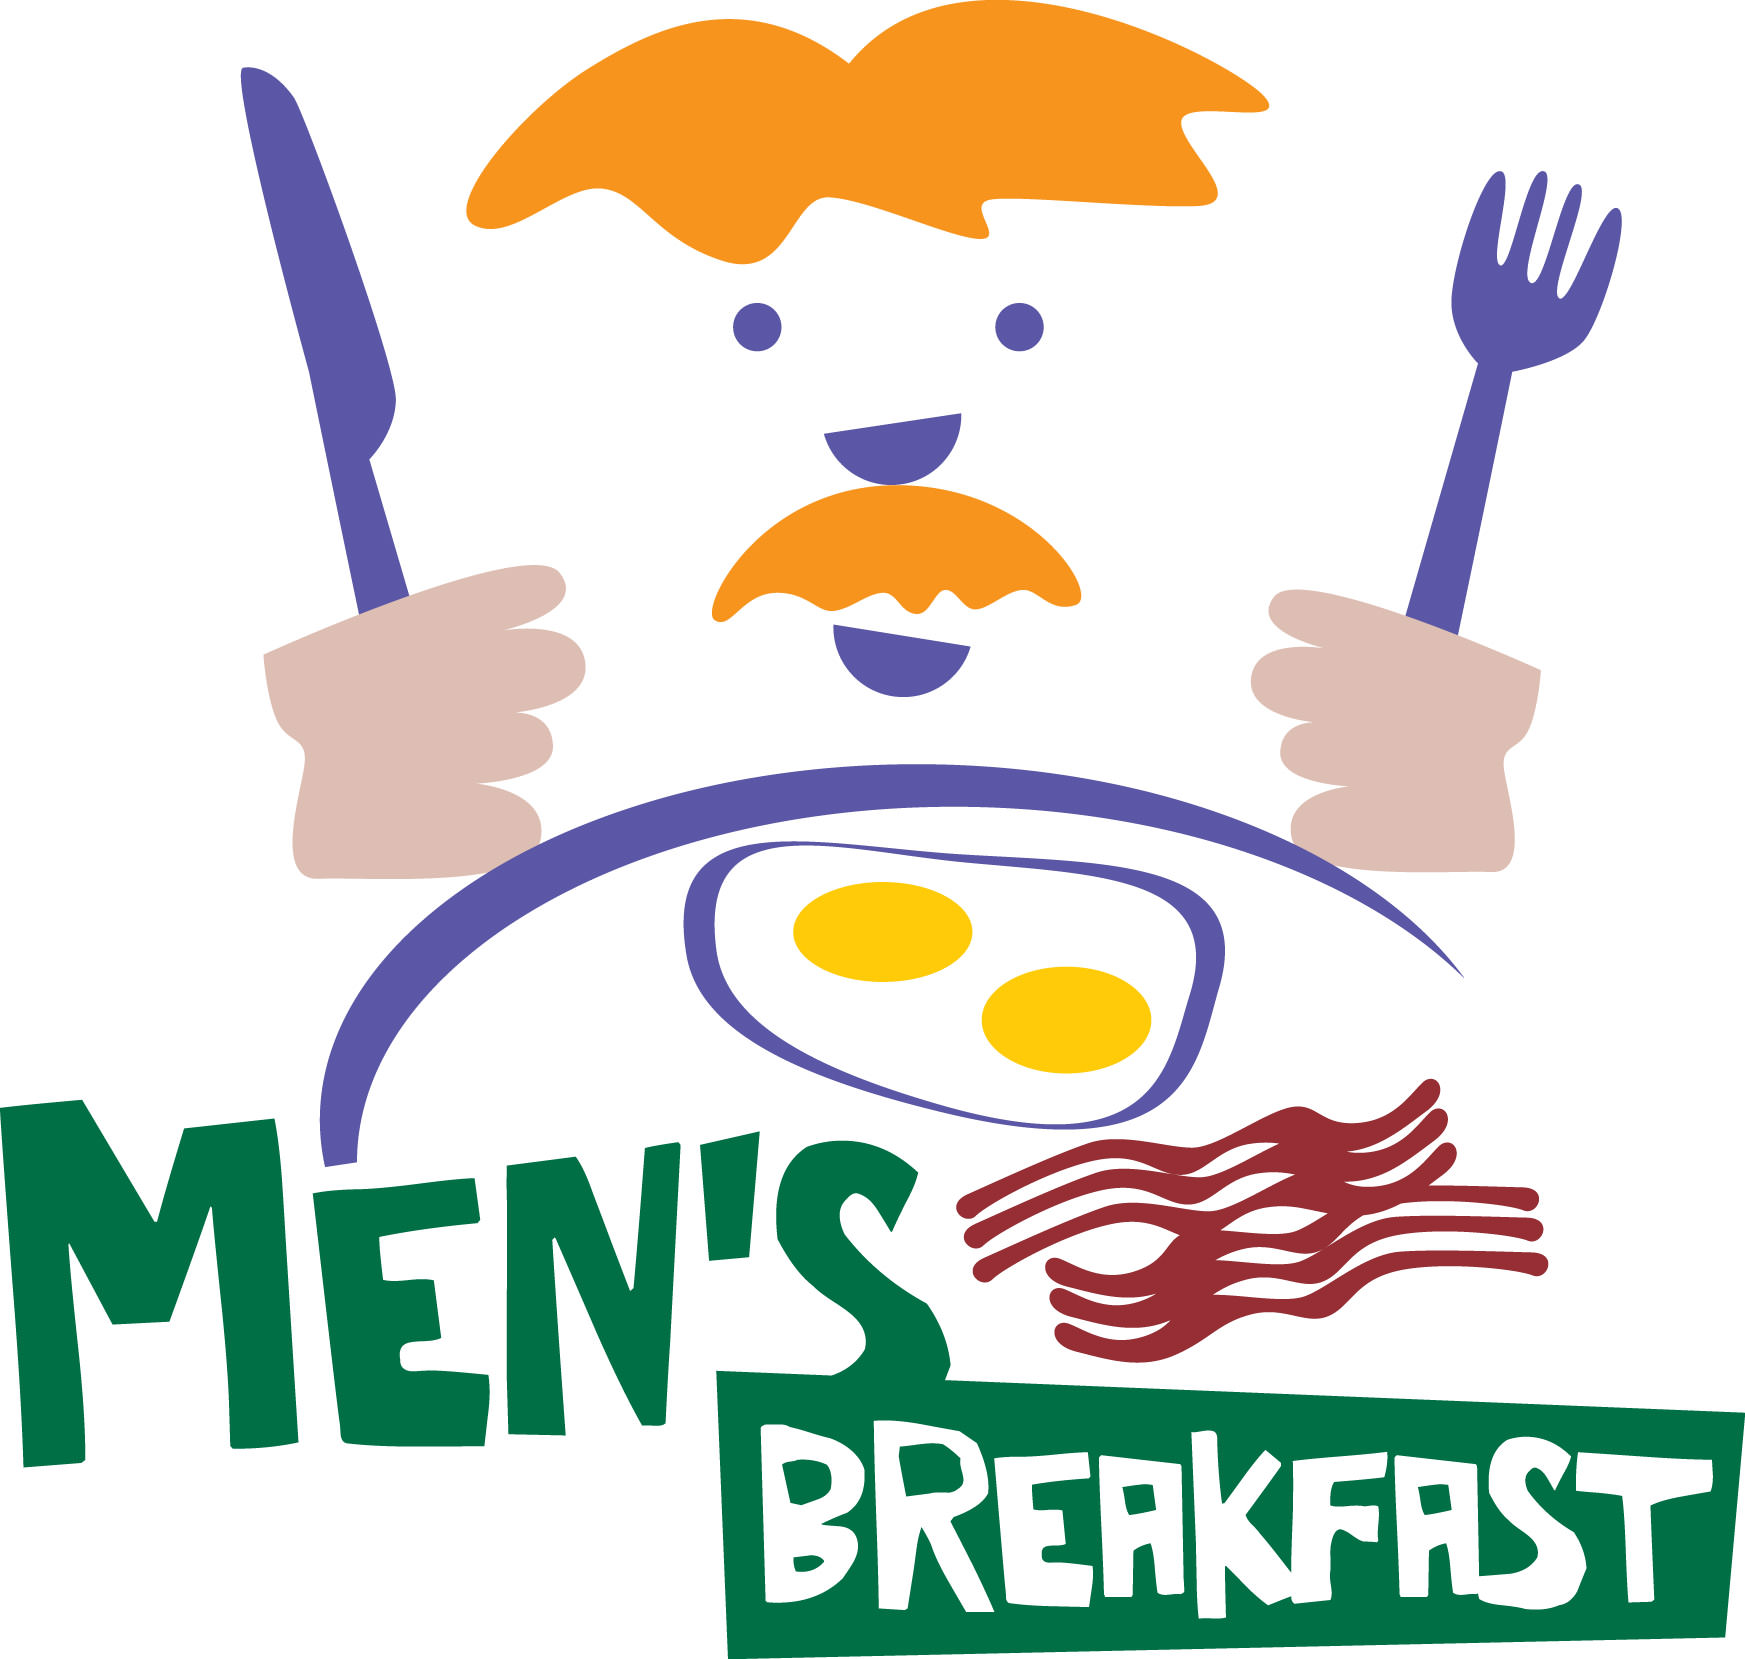 Breakfast Women's Day Clipart